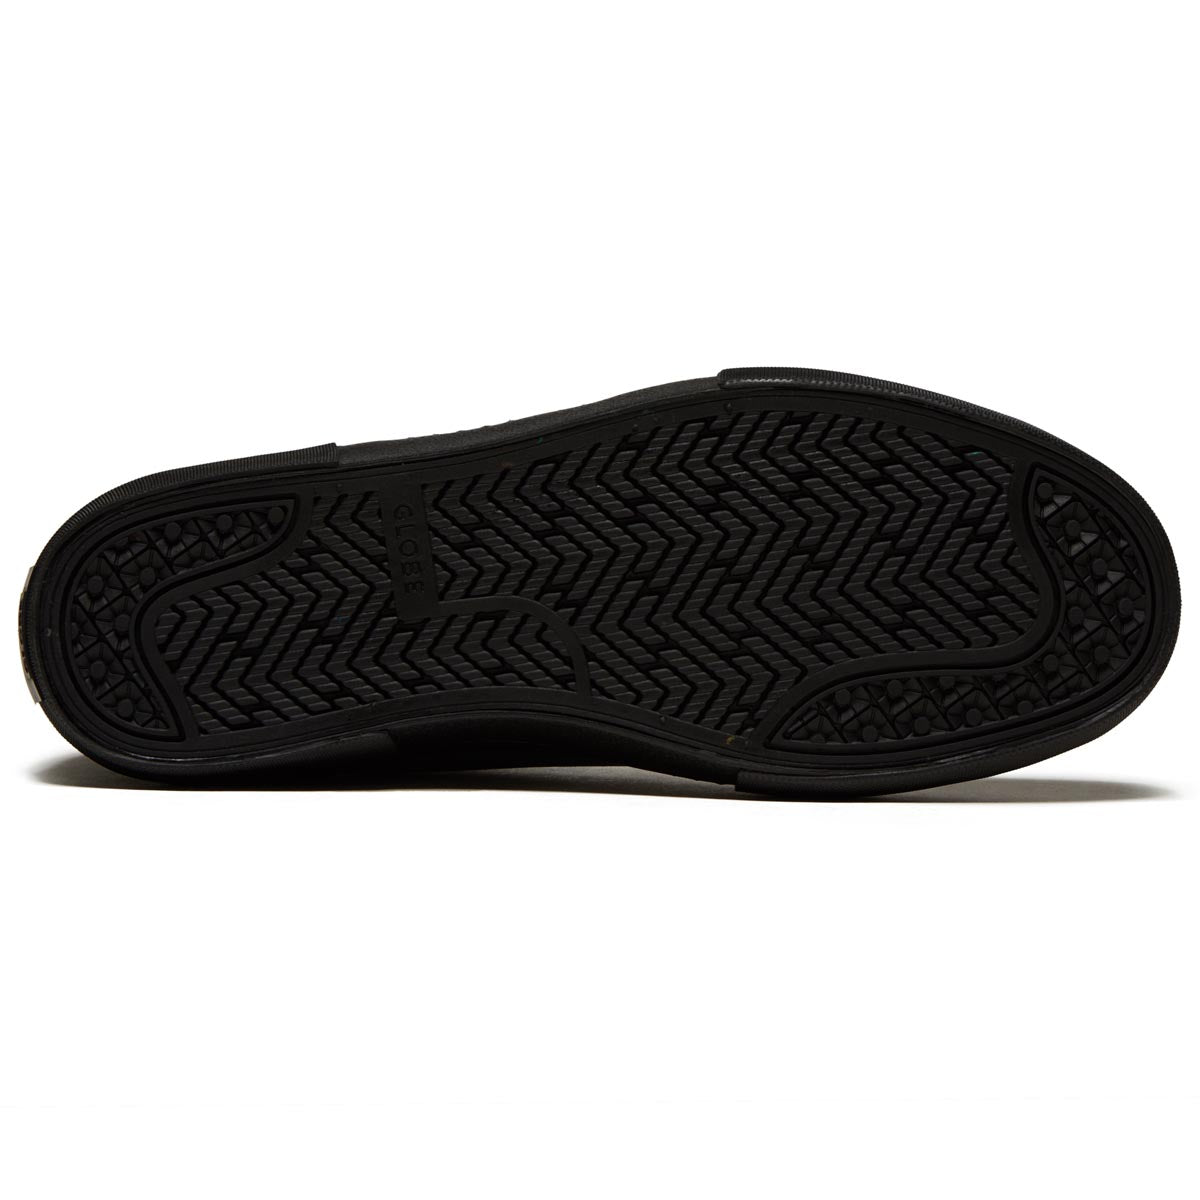 Globe Dover II Shoes - Iron/Black image 4